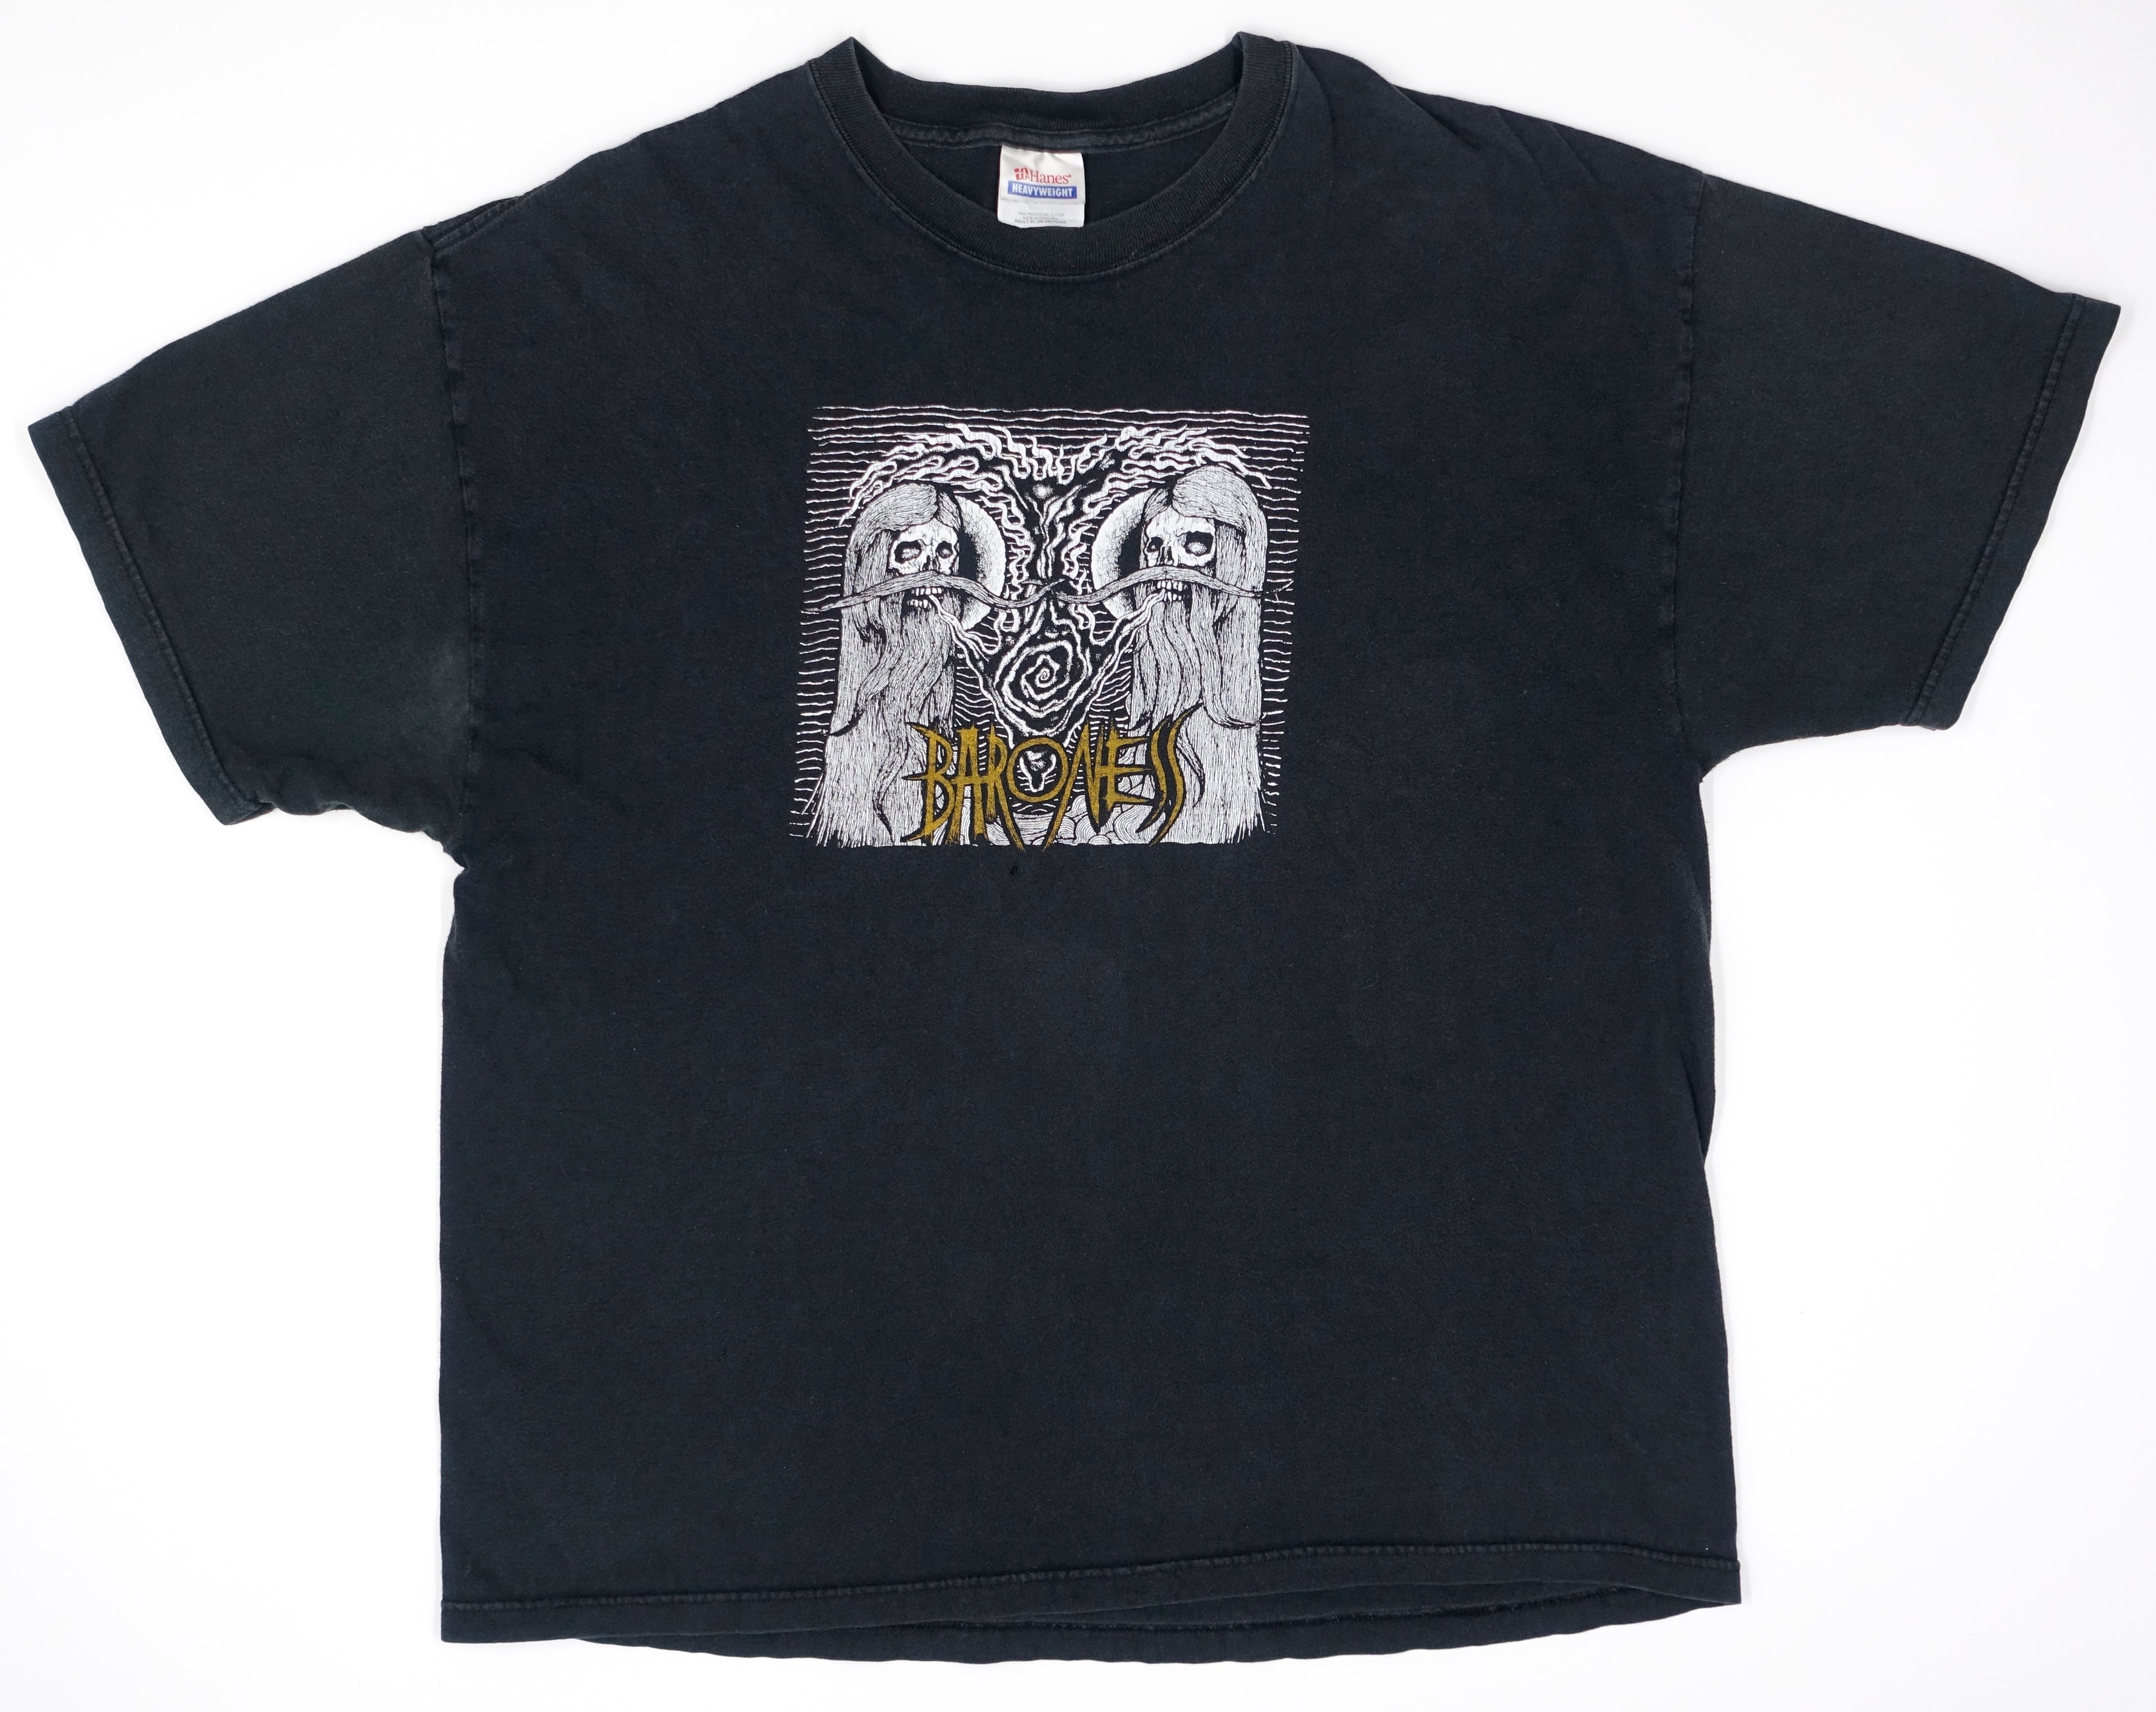 Baroness – First 2001 Tour Shirt Size XL